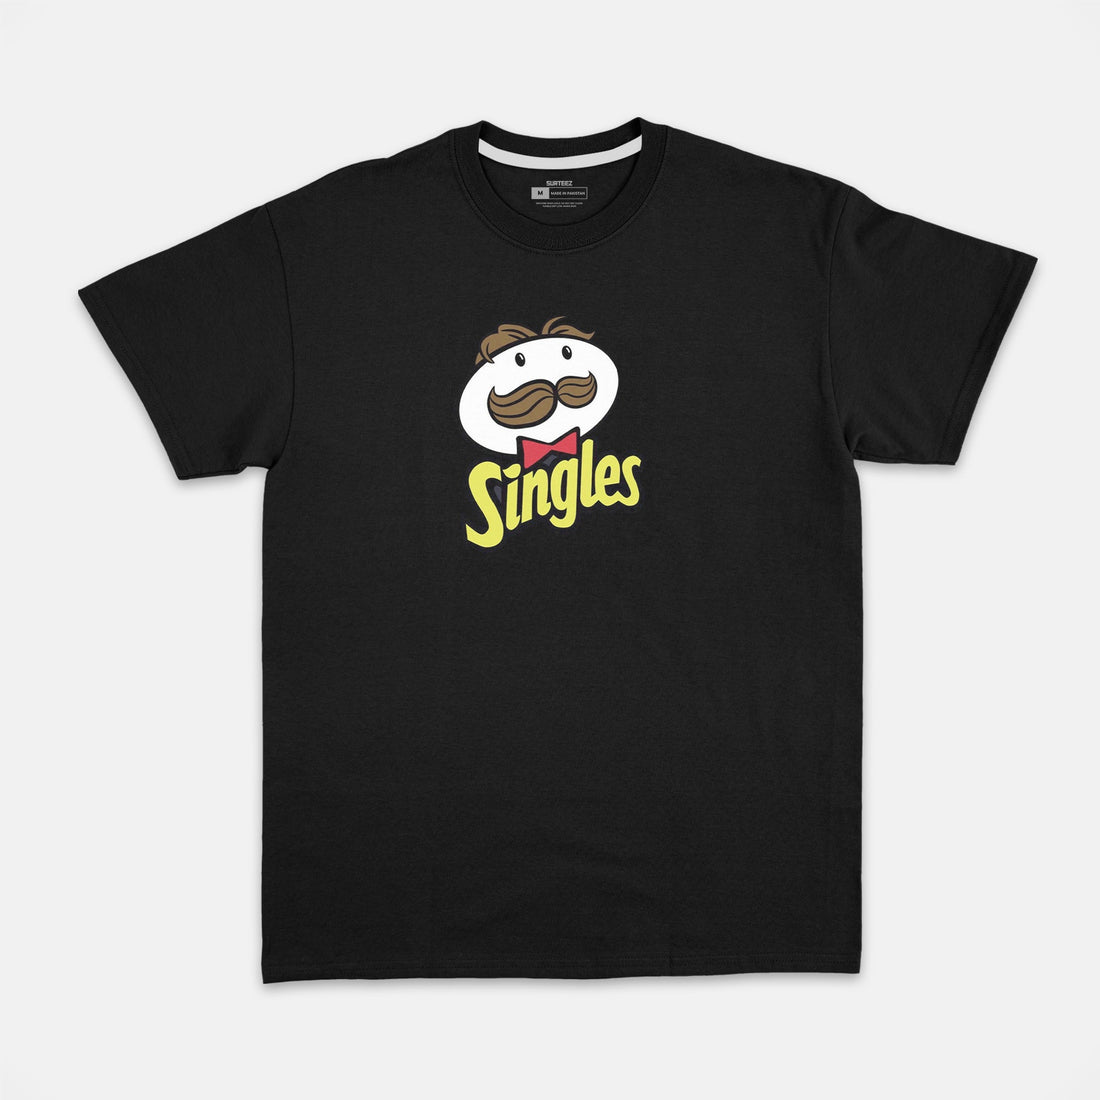 Singles Graphic Tshirt